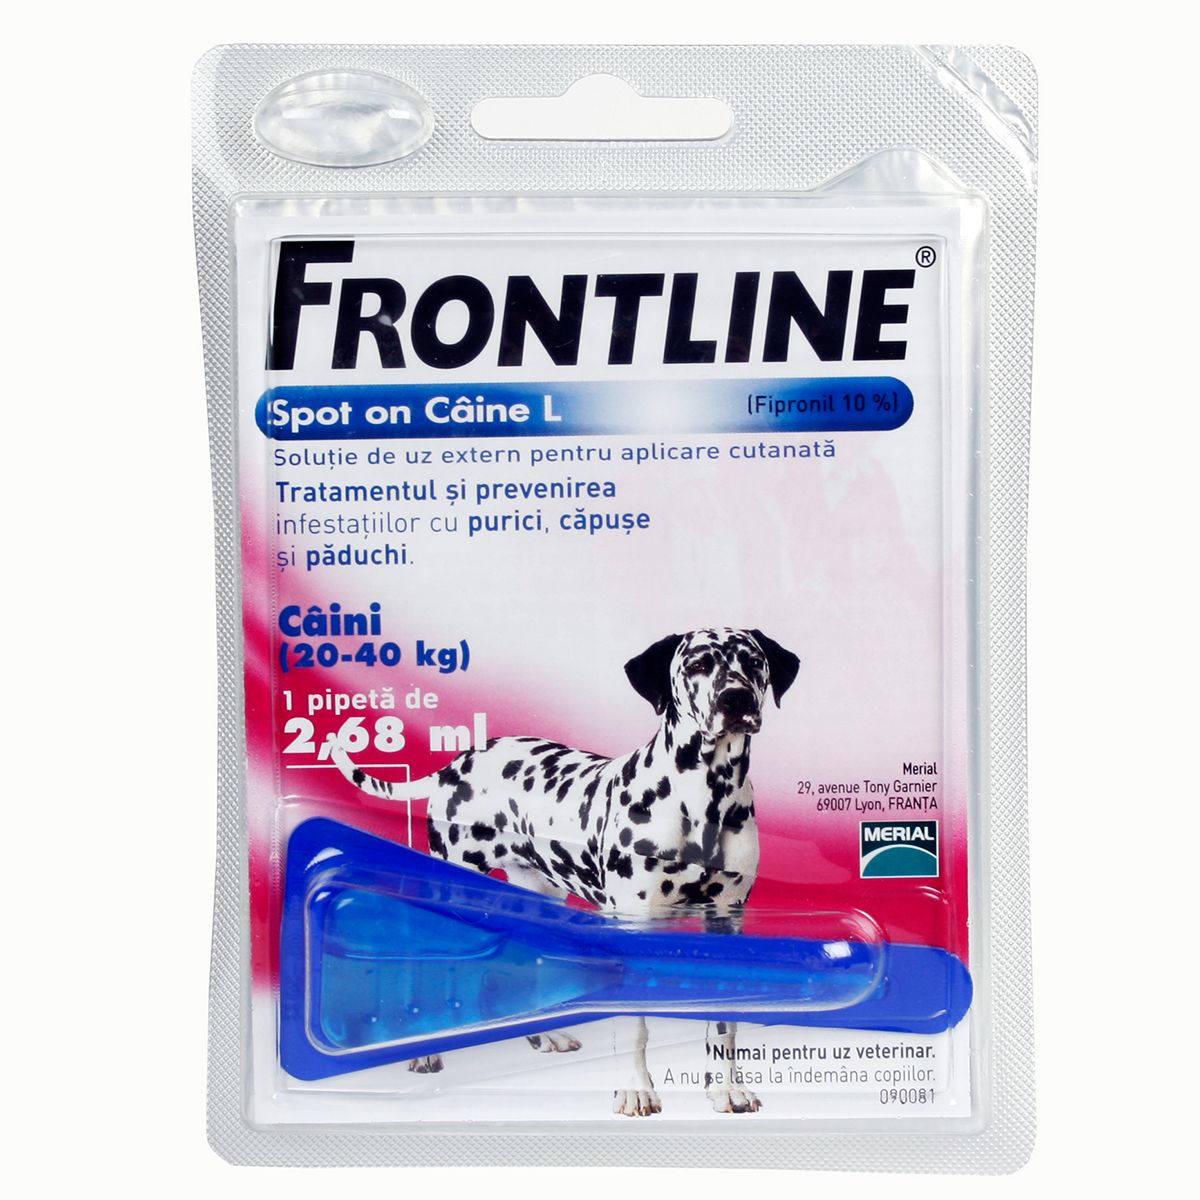 Frontline Spot On L (20-40 kg) – 1 Pipeta Antiparazitara (20-40